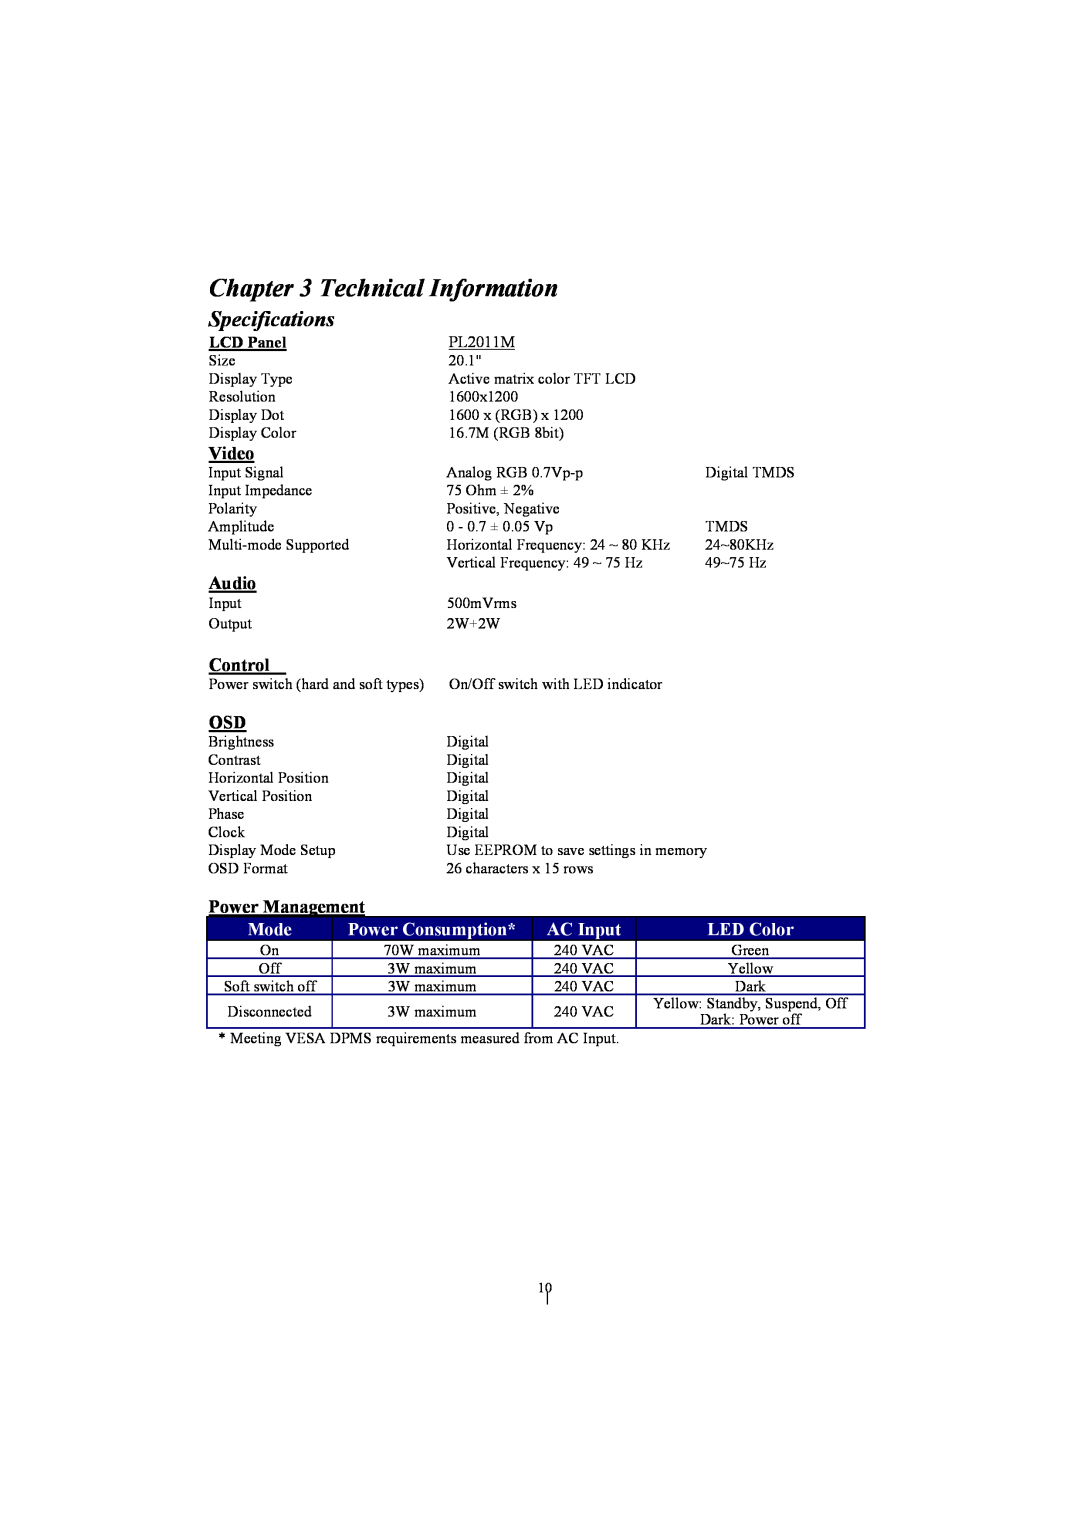 Planar PL2011M manual Specifications, Video, Audio, Control, Power Management, Mode, Power Consumption, AC Input, LED Color 